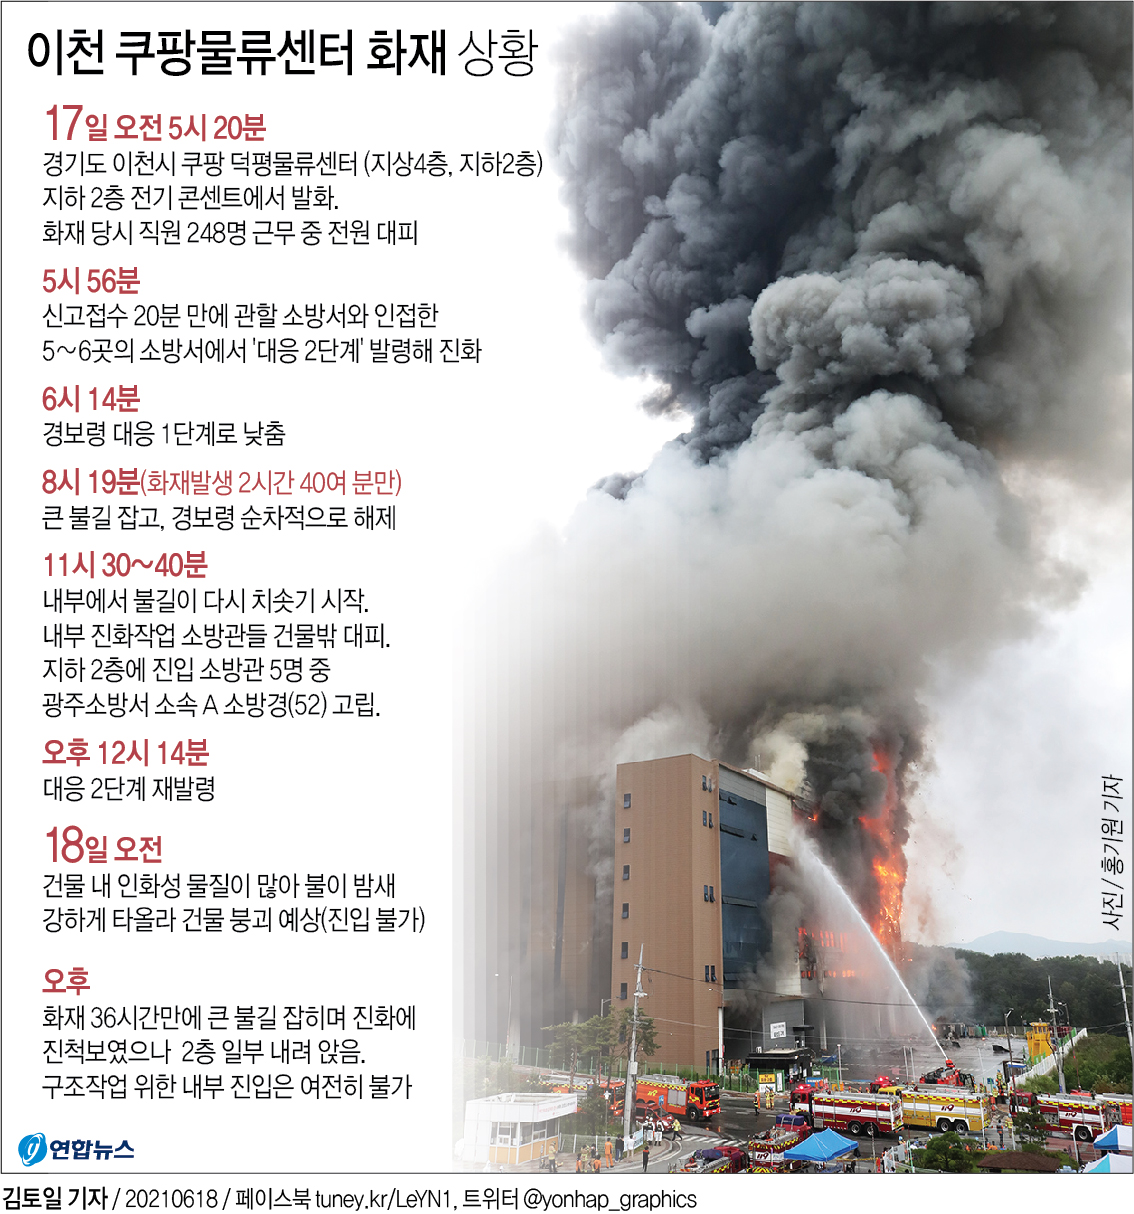 [그래픽] 이천 쿠팡물류센터 화재 상황(종합)